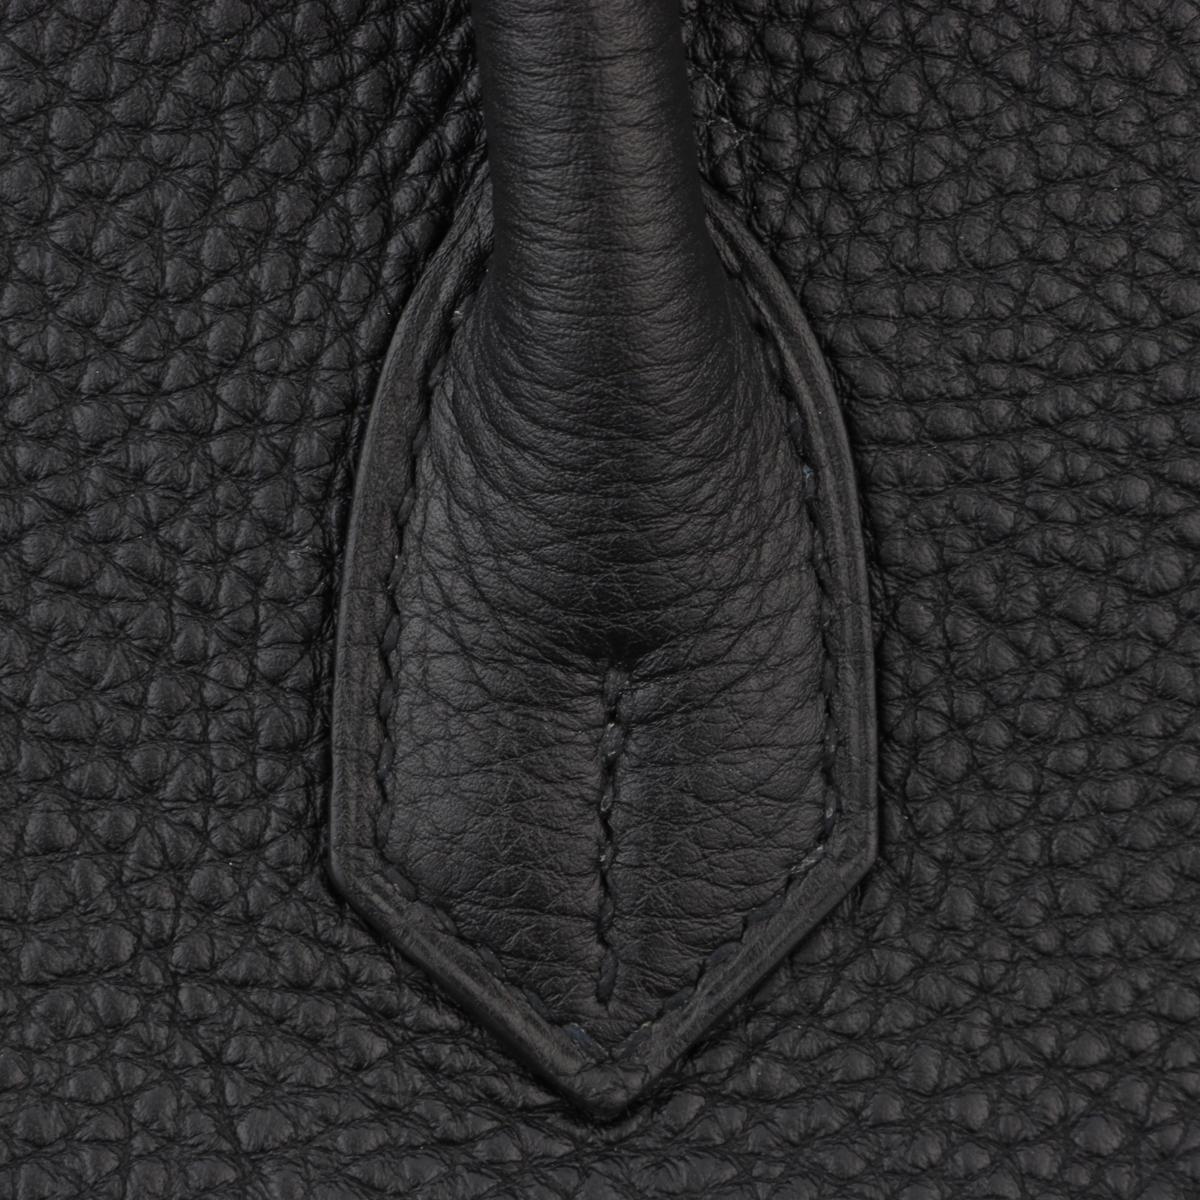 Hermès Birkin Bag 40cm Black Togo Leather with Gold Hardware Stamp N 2010 10